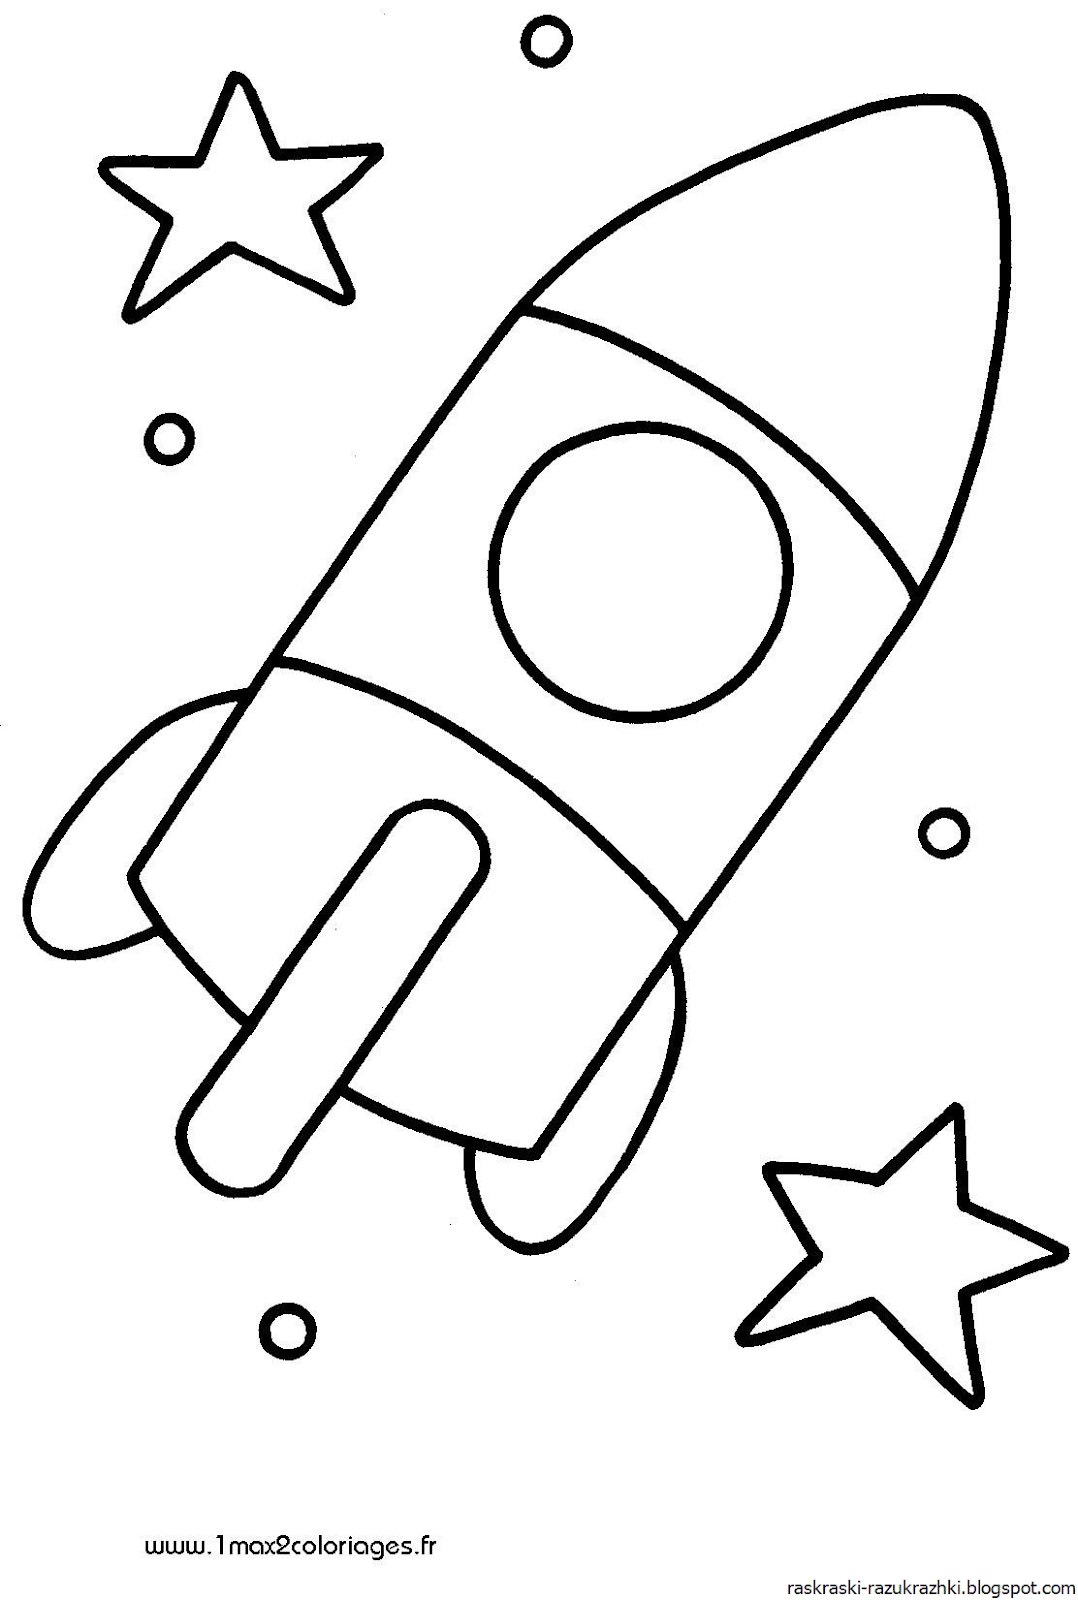 Ракета раскраска. Ракета раскраска для малышей. Раскраски на тему космос для детей 3-4 лет. Раскраска для малышей. Космос.